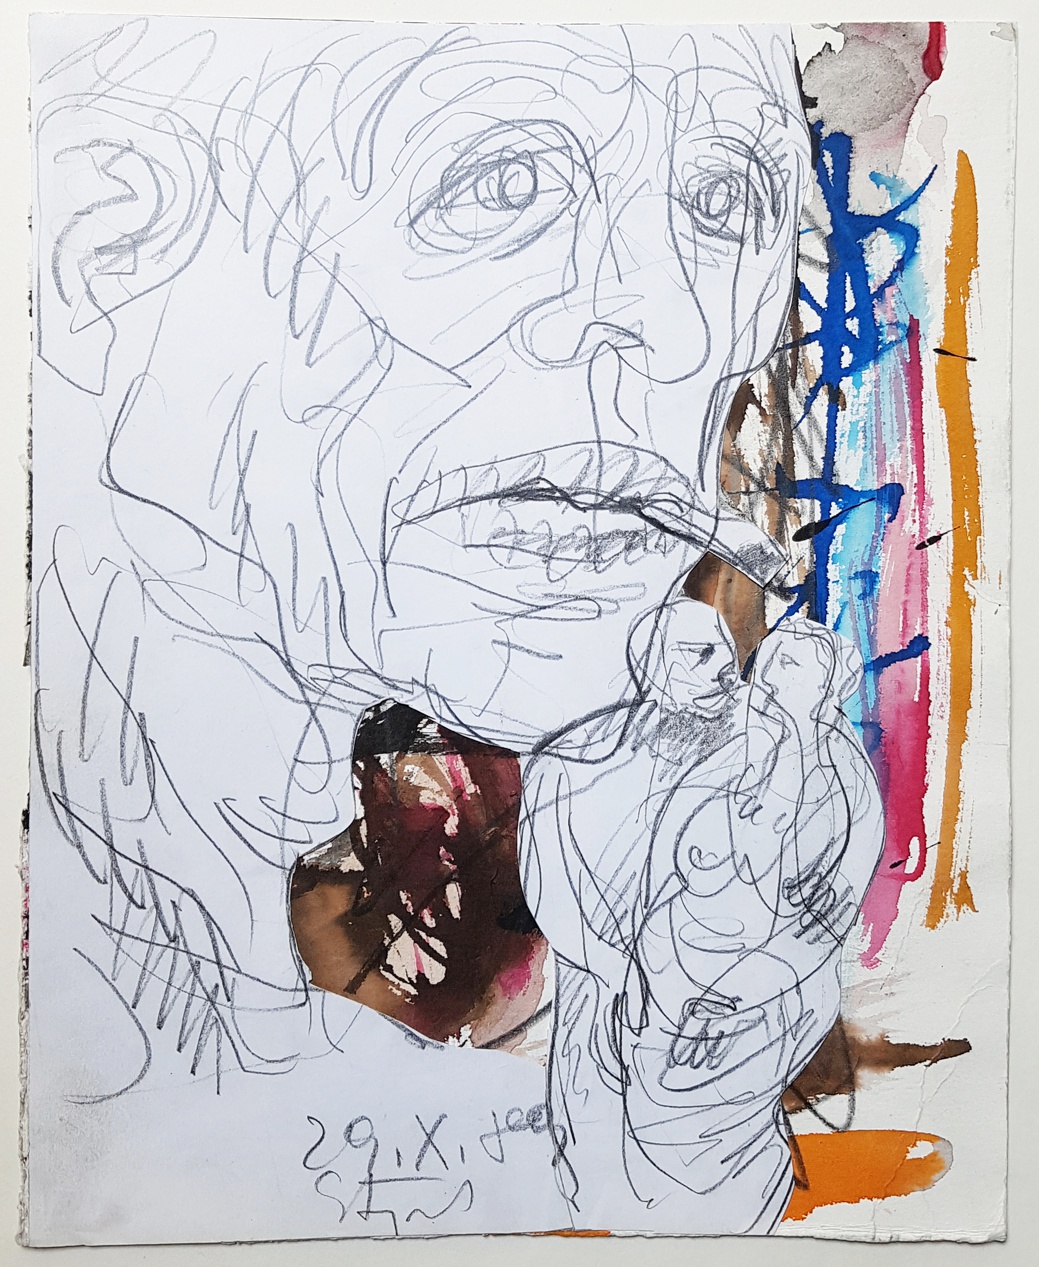 Karl Stengel - Senza titolo - Collage carta, inchiostro, matita e acquerello